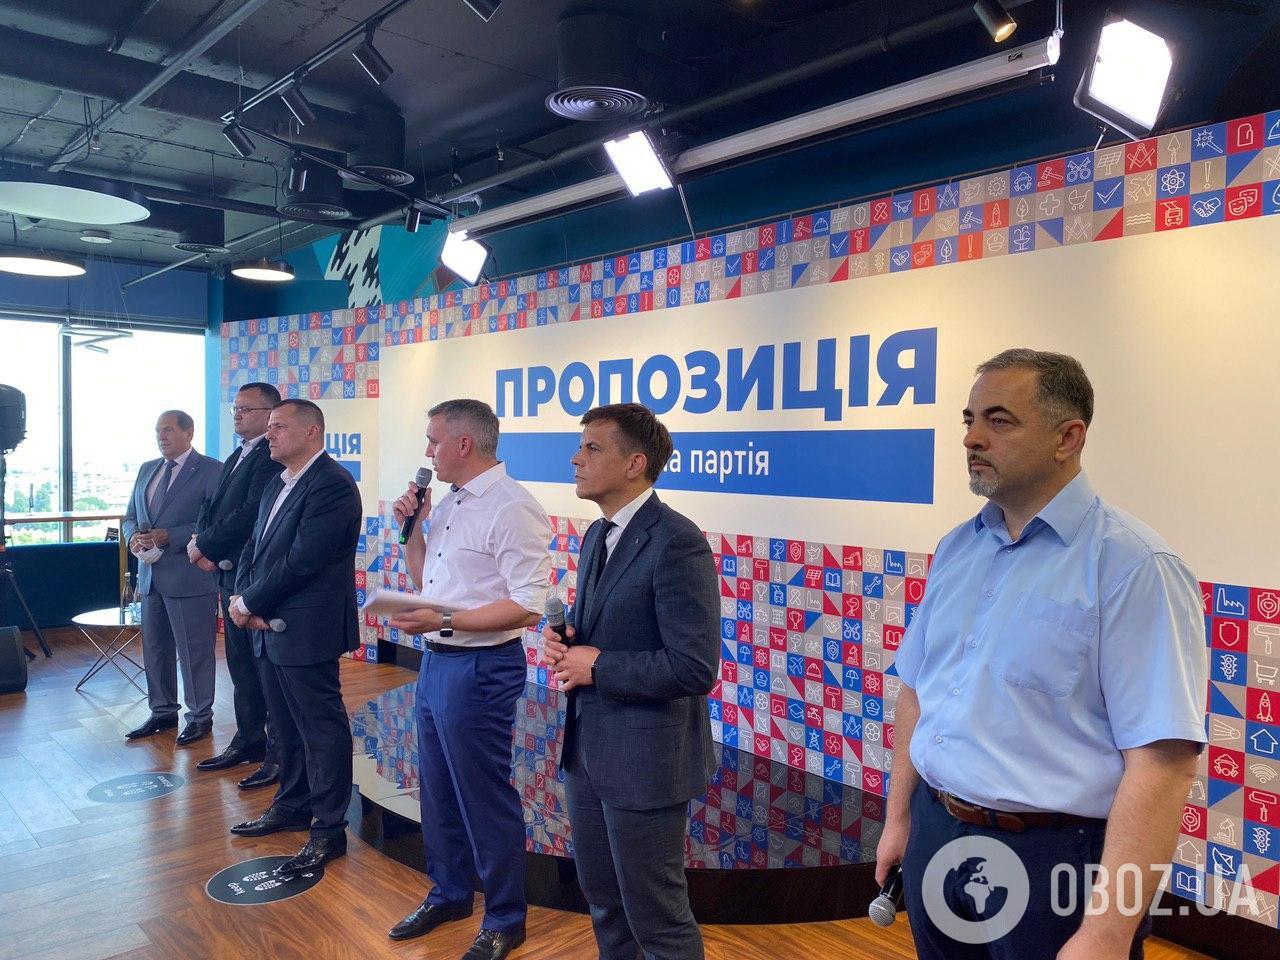 В Украине представили партию мэров "Пропозиція". Видео